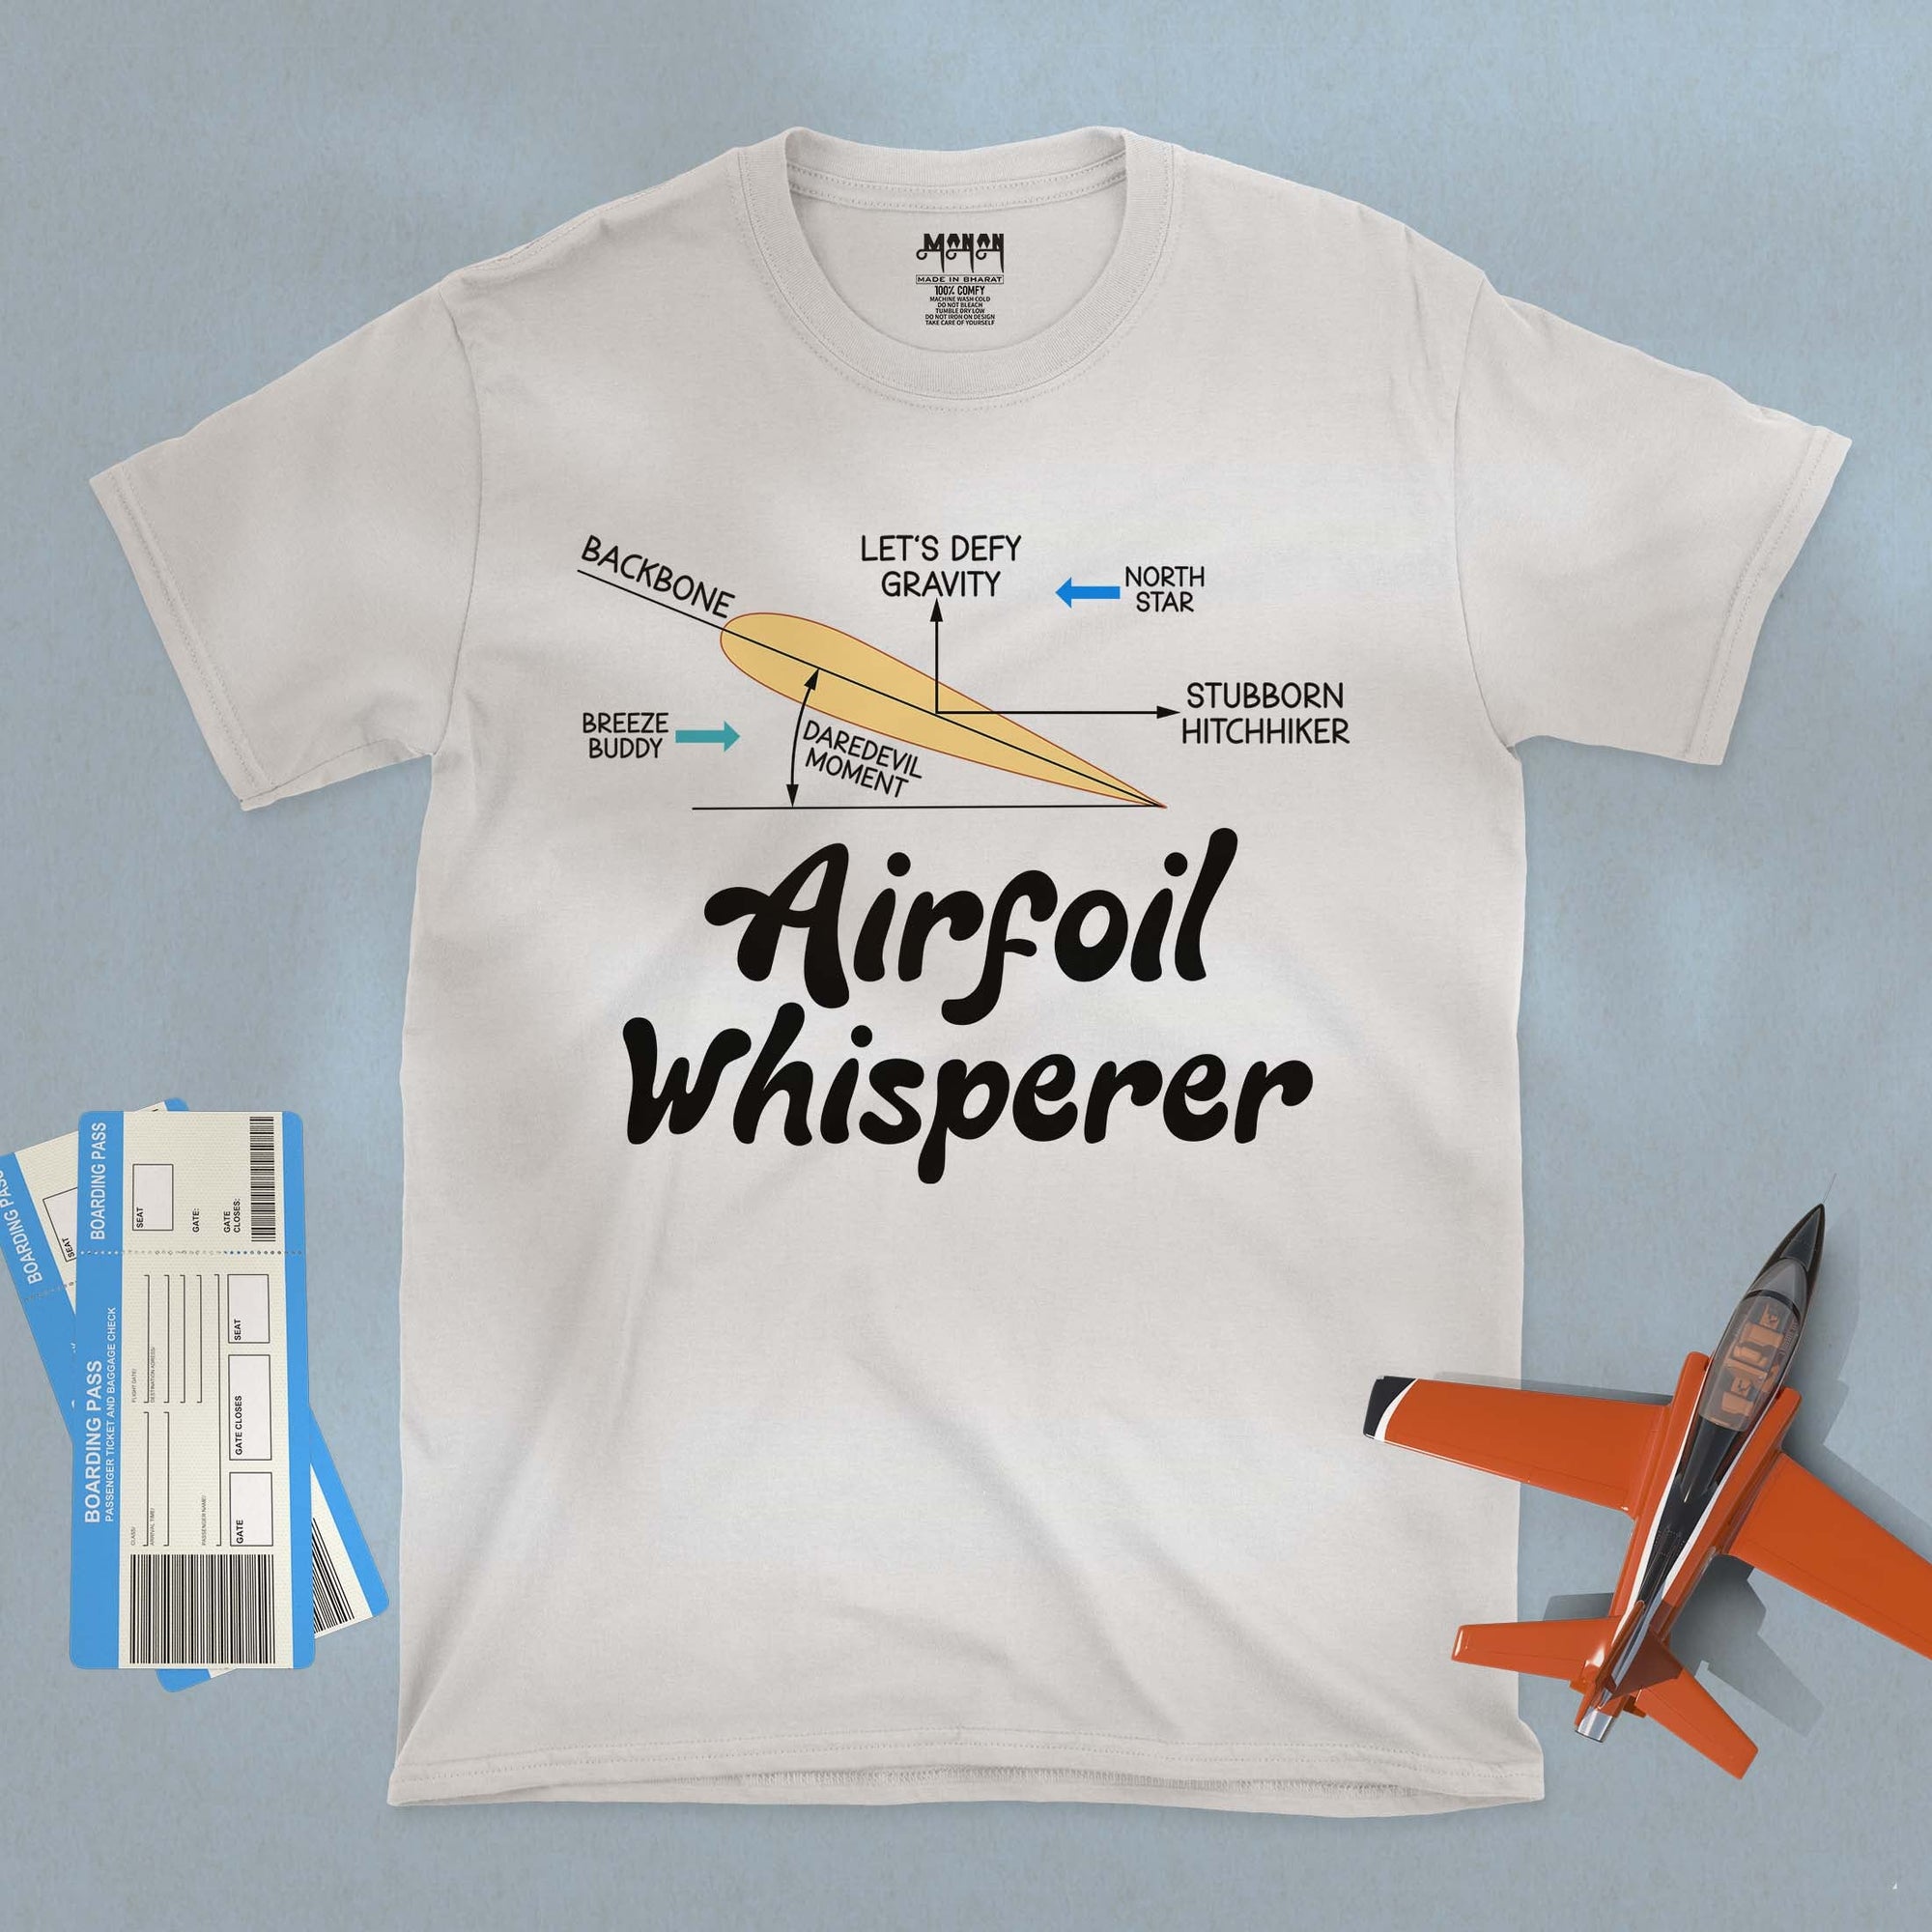 Airfoil Whisperer - Unisex T-shirt For Aerospace &amp; Aeronautical Engineers